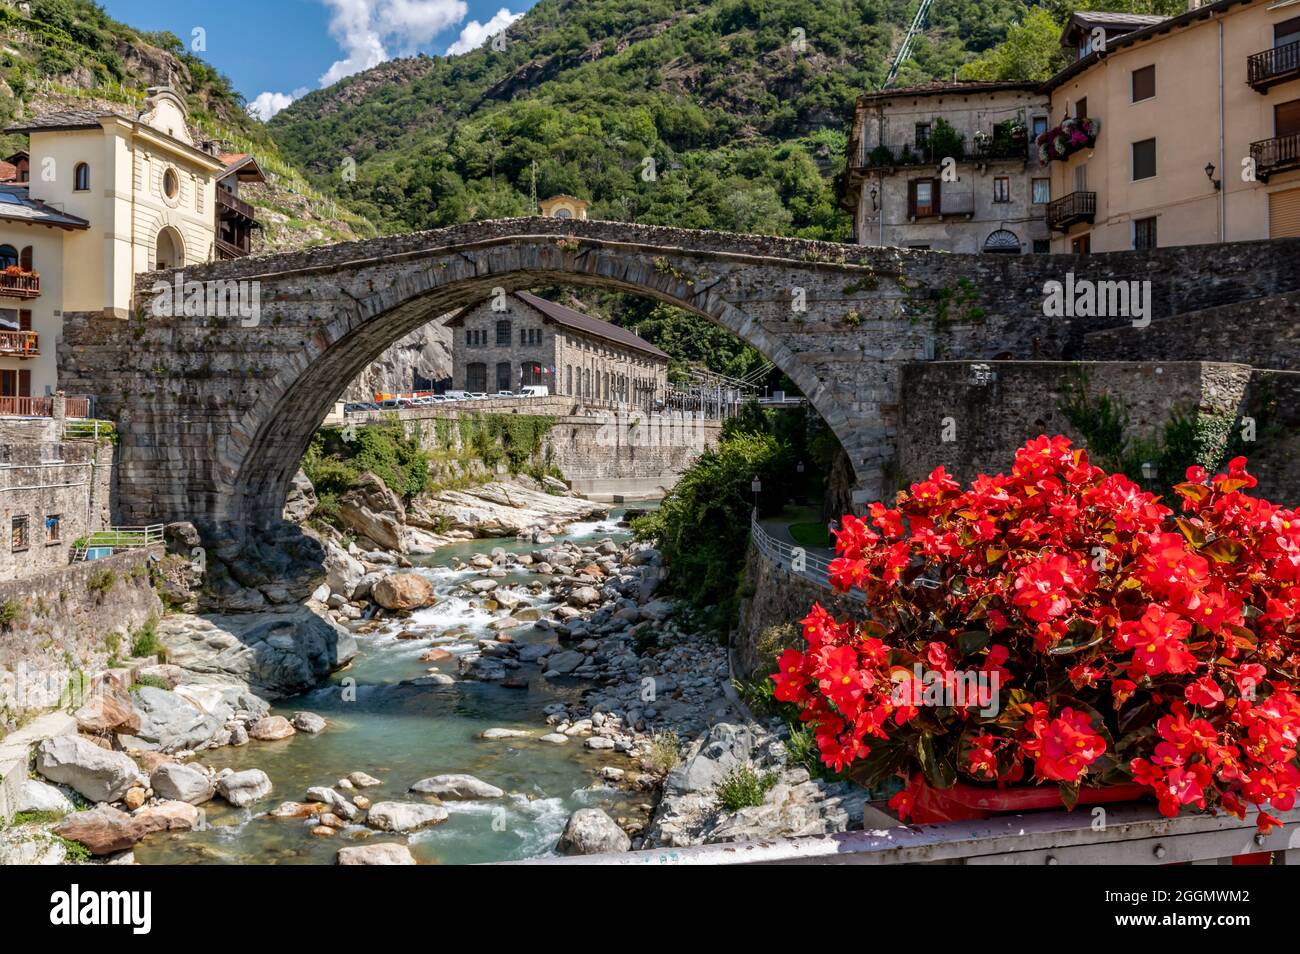 De belles fleurs rouges décorent le centre historique du Pont Saint Martin, Valle d'Aoste, Italie, près de l'ancien pont romain Banque D'Images